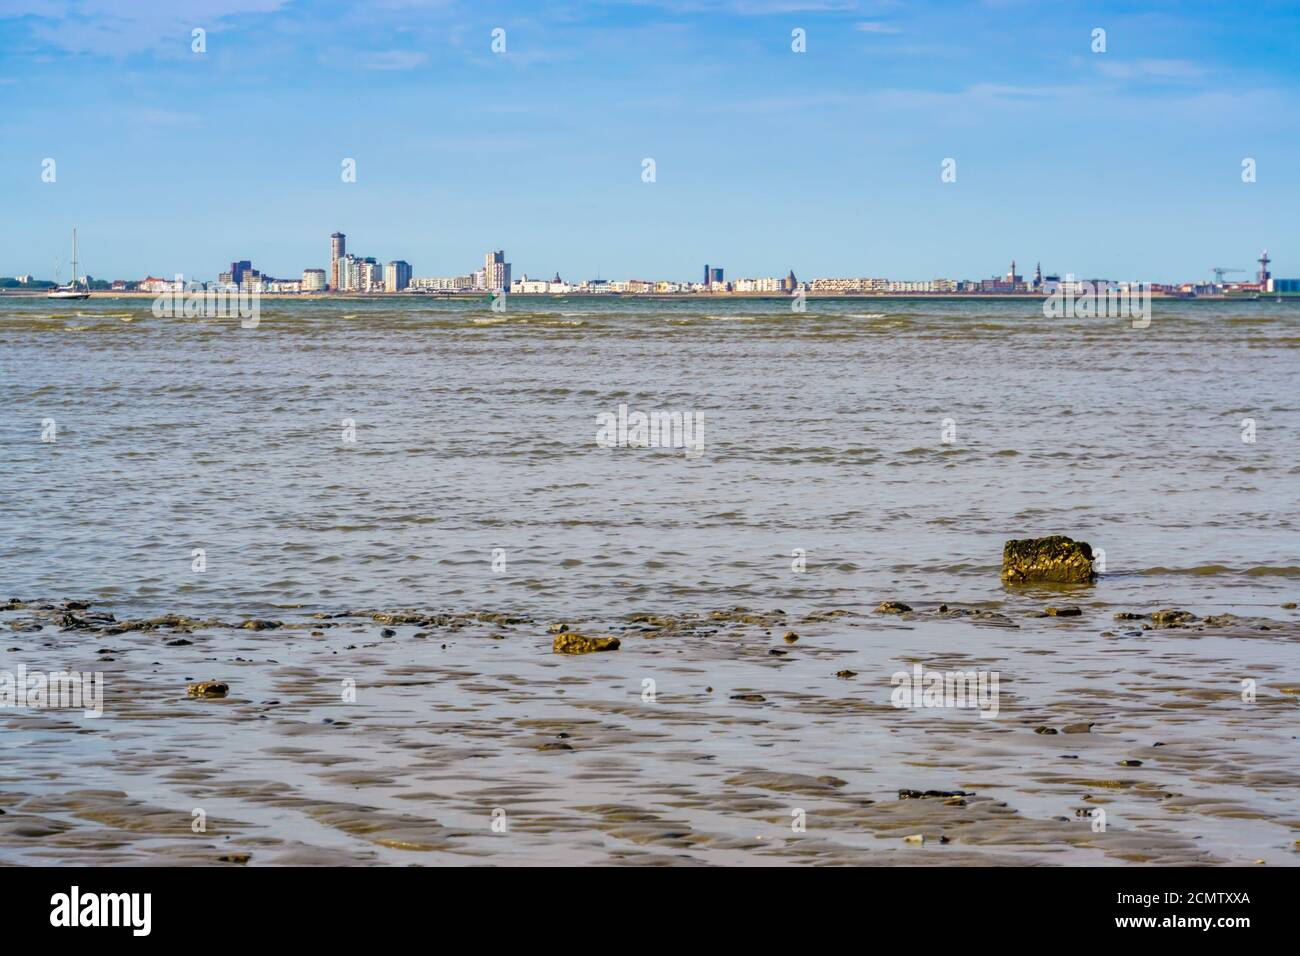 Les Mudflats de Breskens plage avec vue sur la ville de vlissingen, Zeeland, pays-Bas Banque D'Images